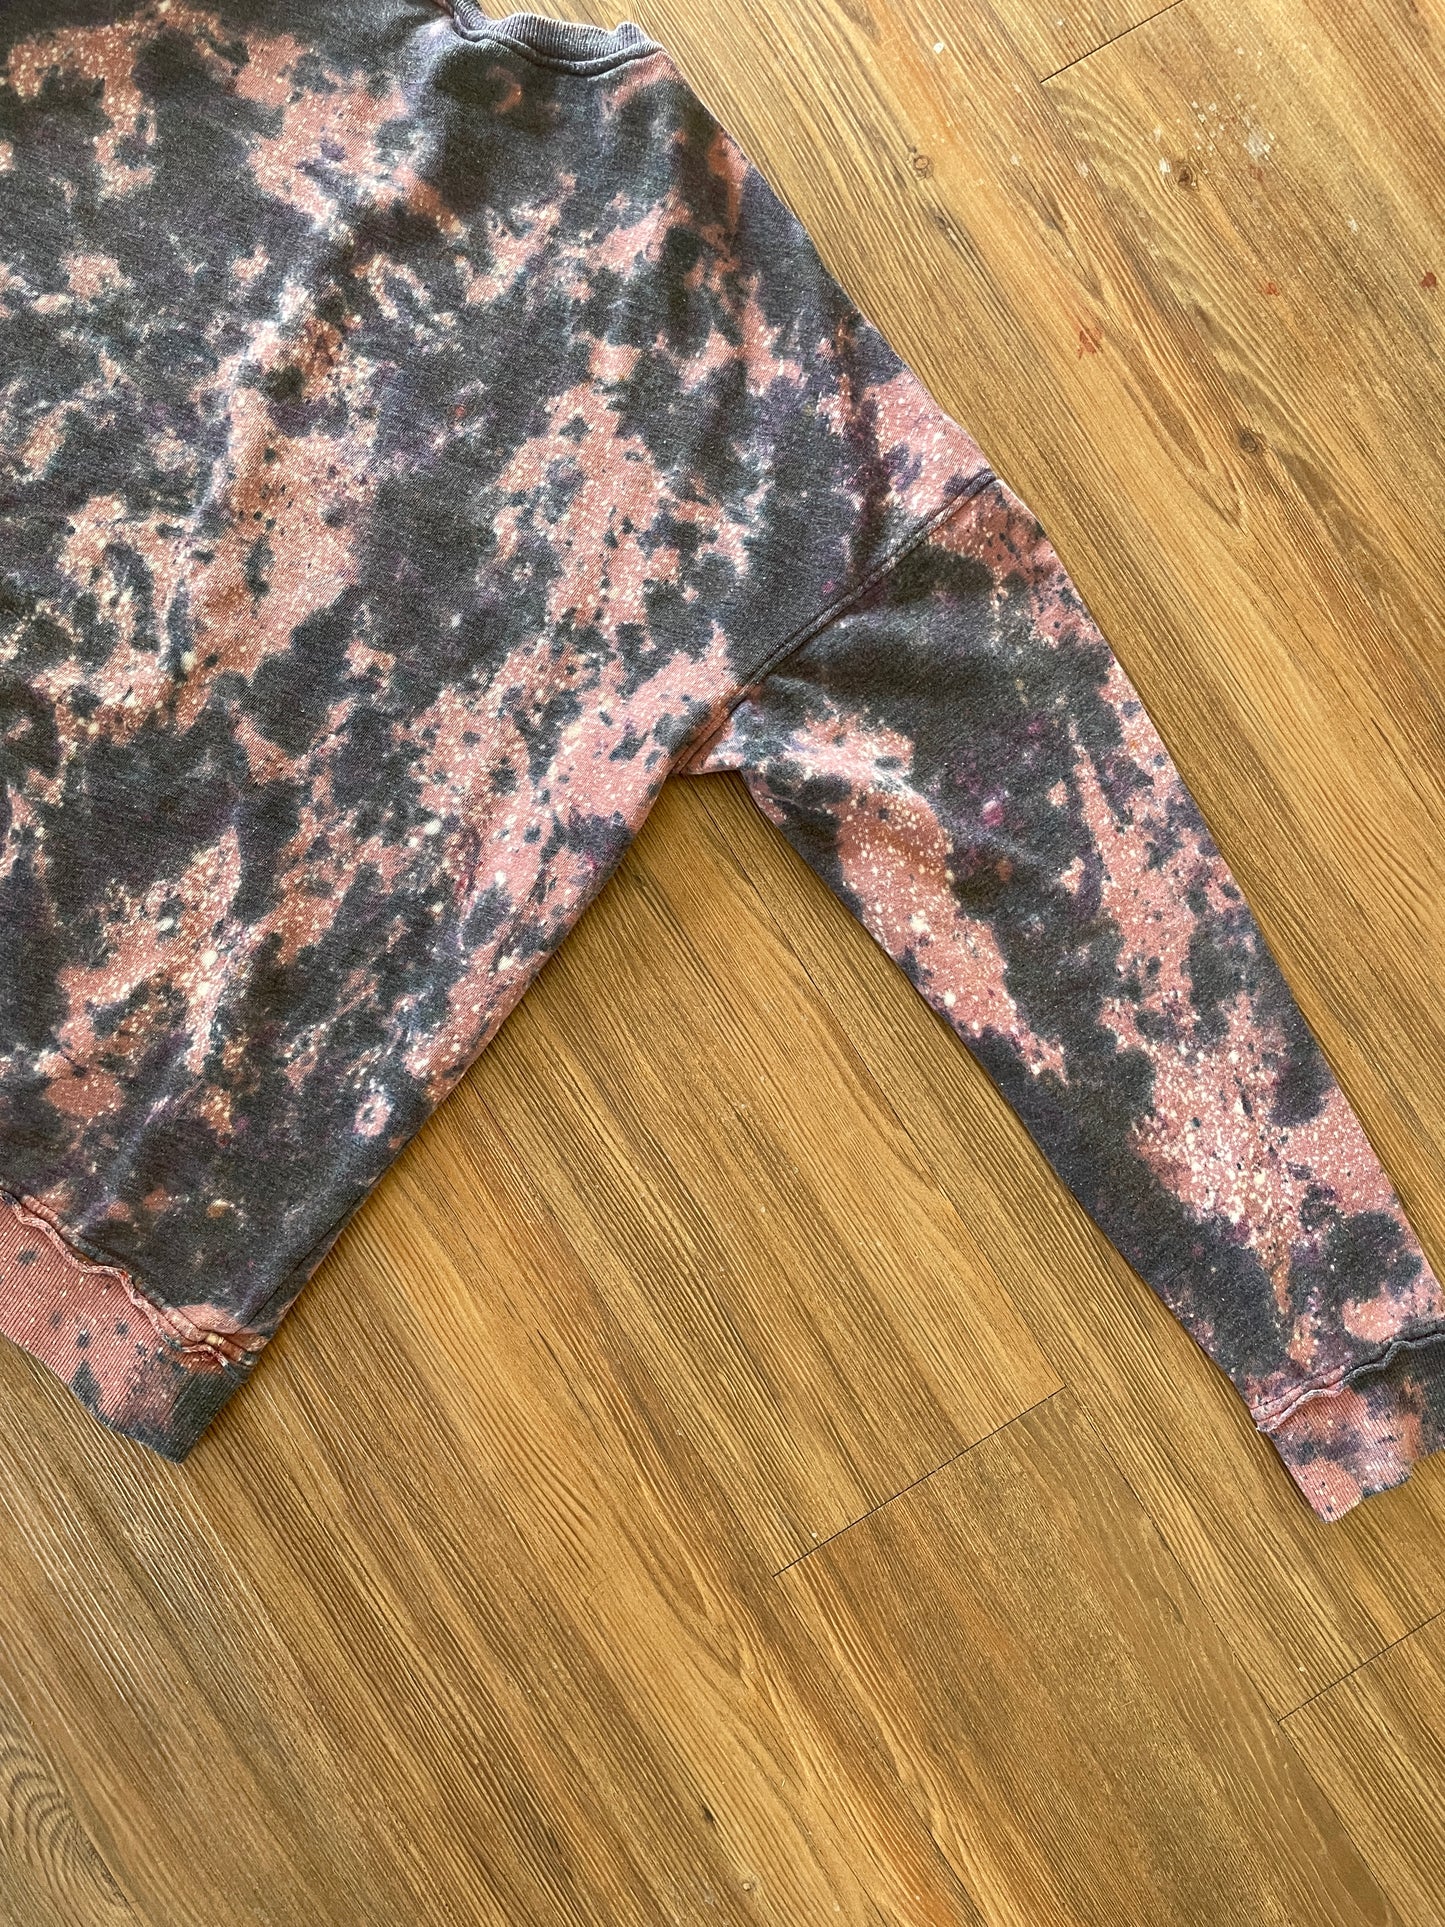 XL Men’s Utah Handmade Earth Tones Tie Dye Sweatshirt | Pink, Black, and Pink Tie Dye Long Sleeve Sweater